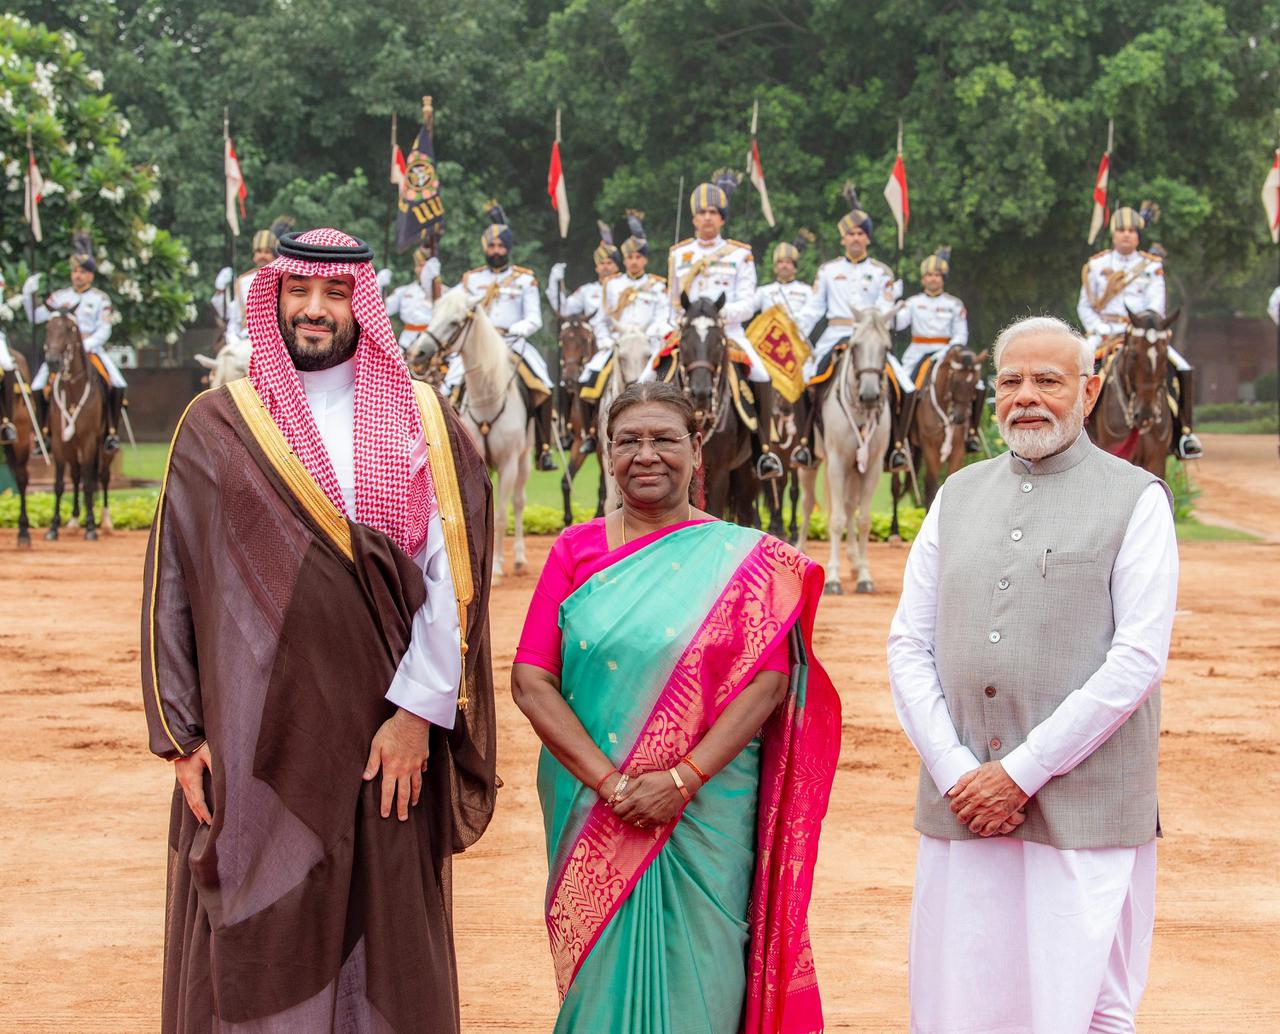 مراسم استقبال رسمية لولي العهد خلال زيارته للقصر الرئاسي الهندي